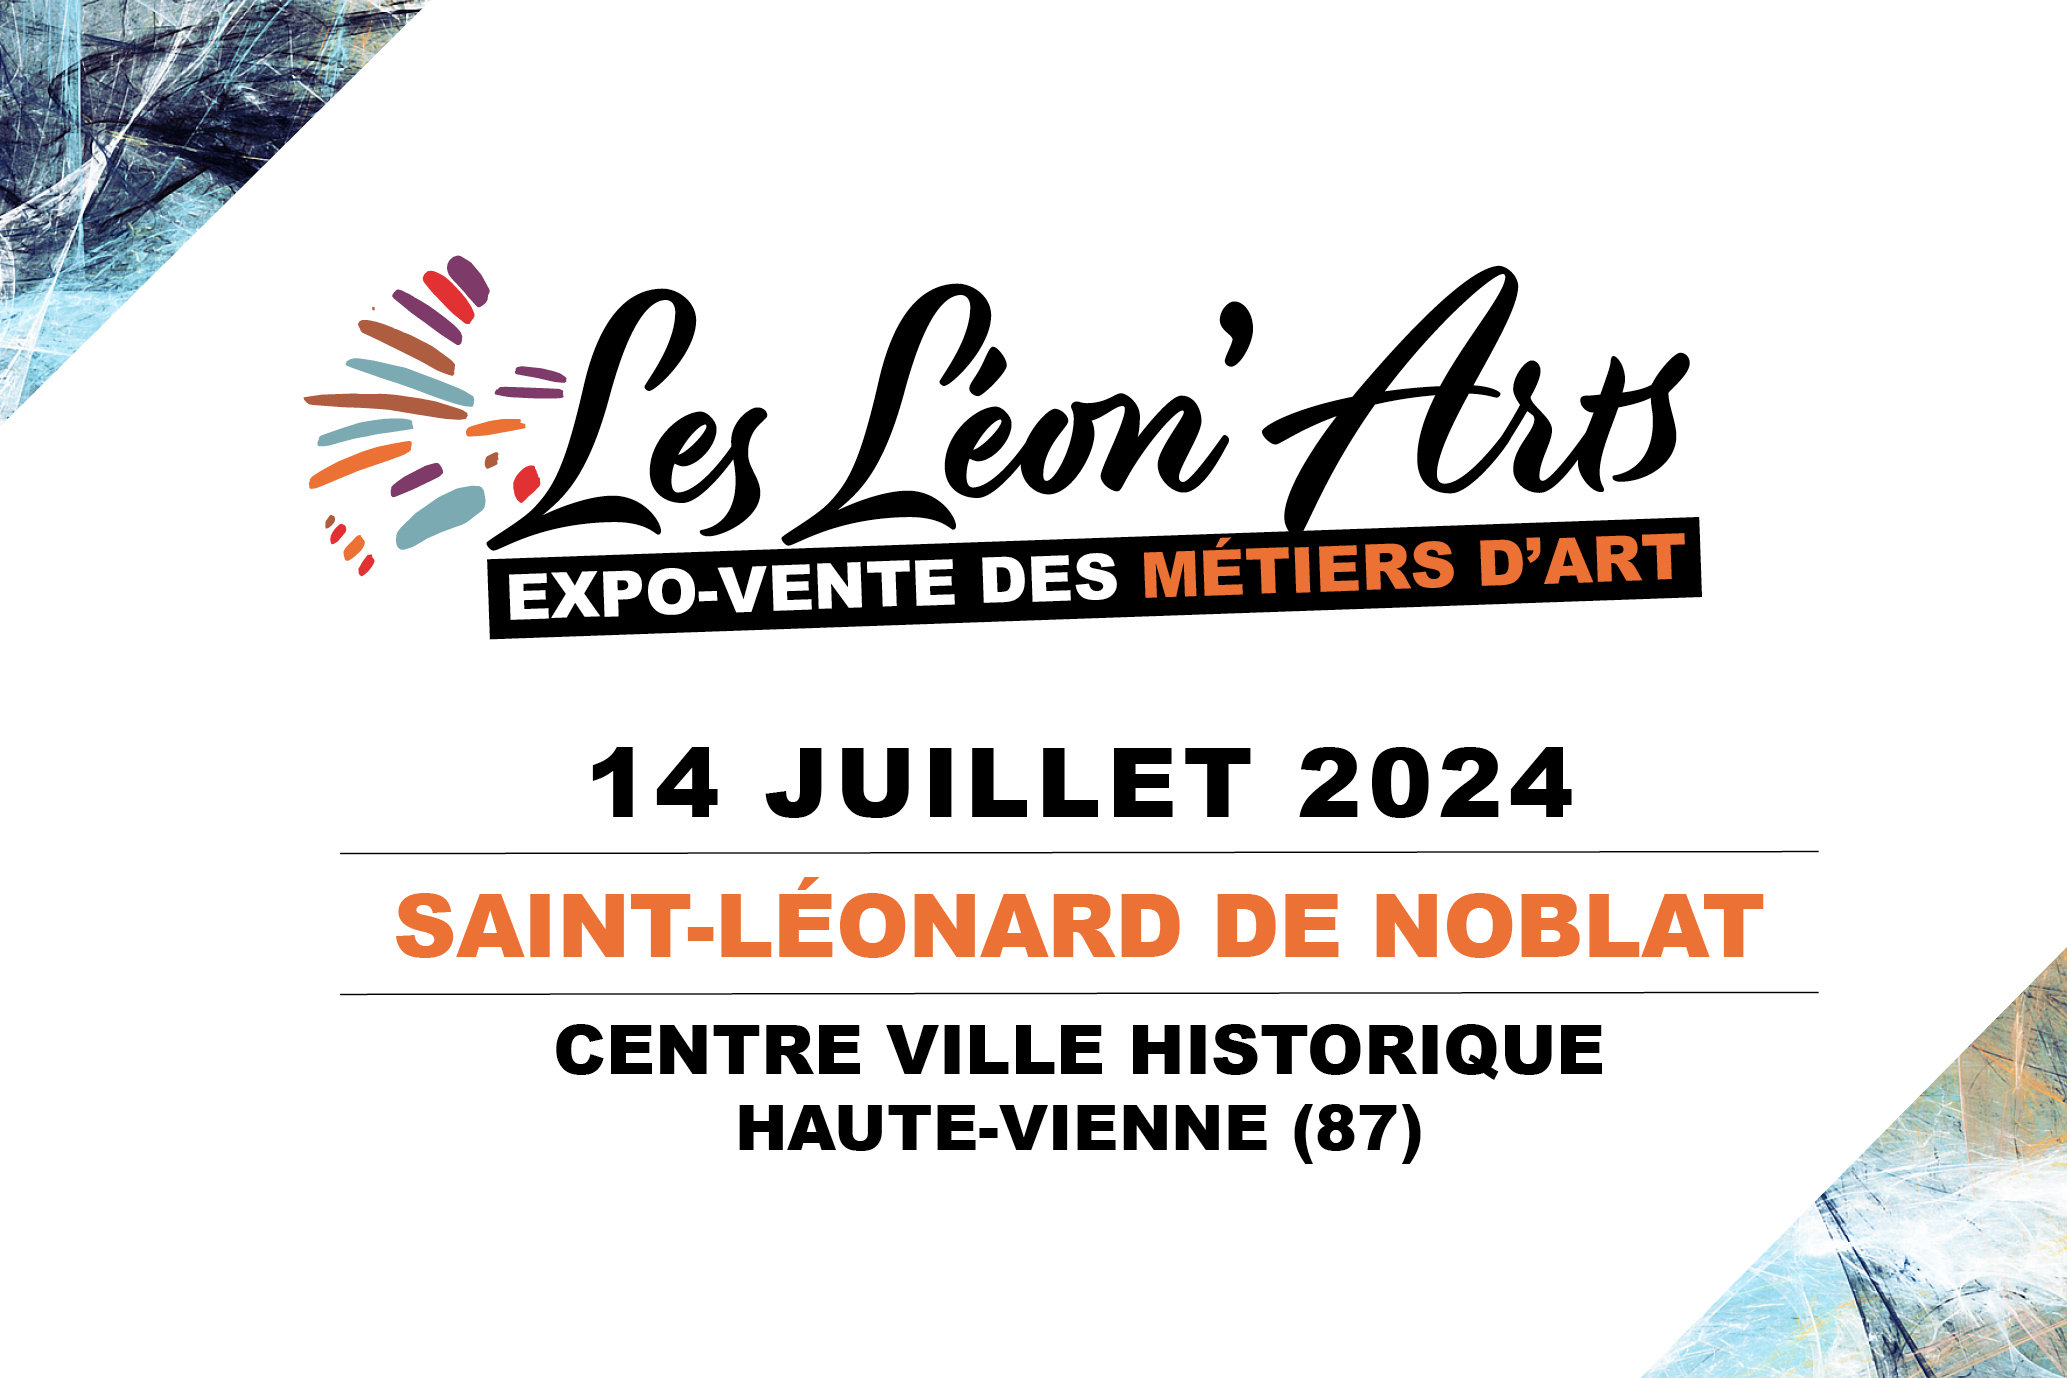 Exposition des métiers d’art à Saint-Léonard-de-Noblat (87)